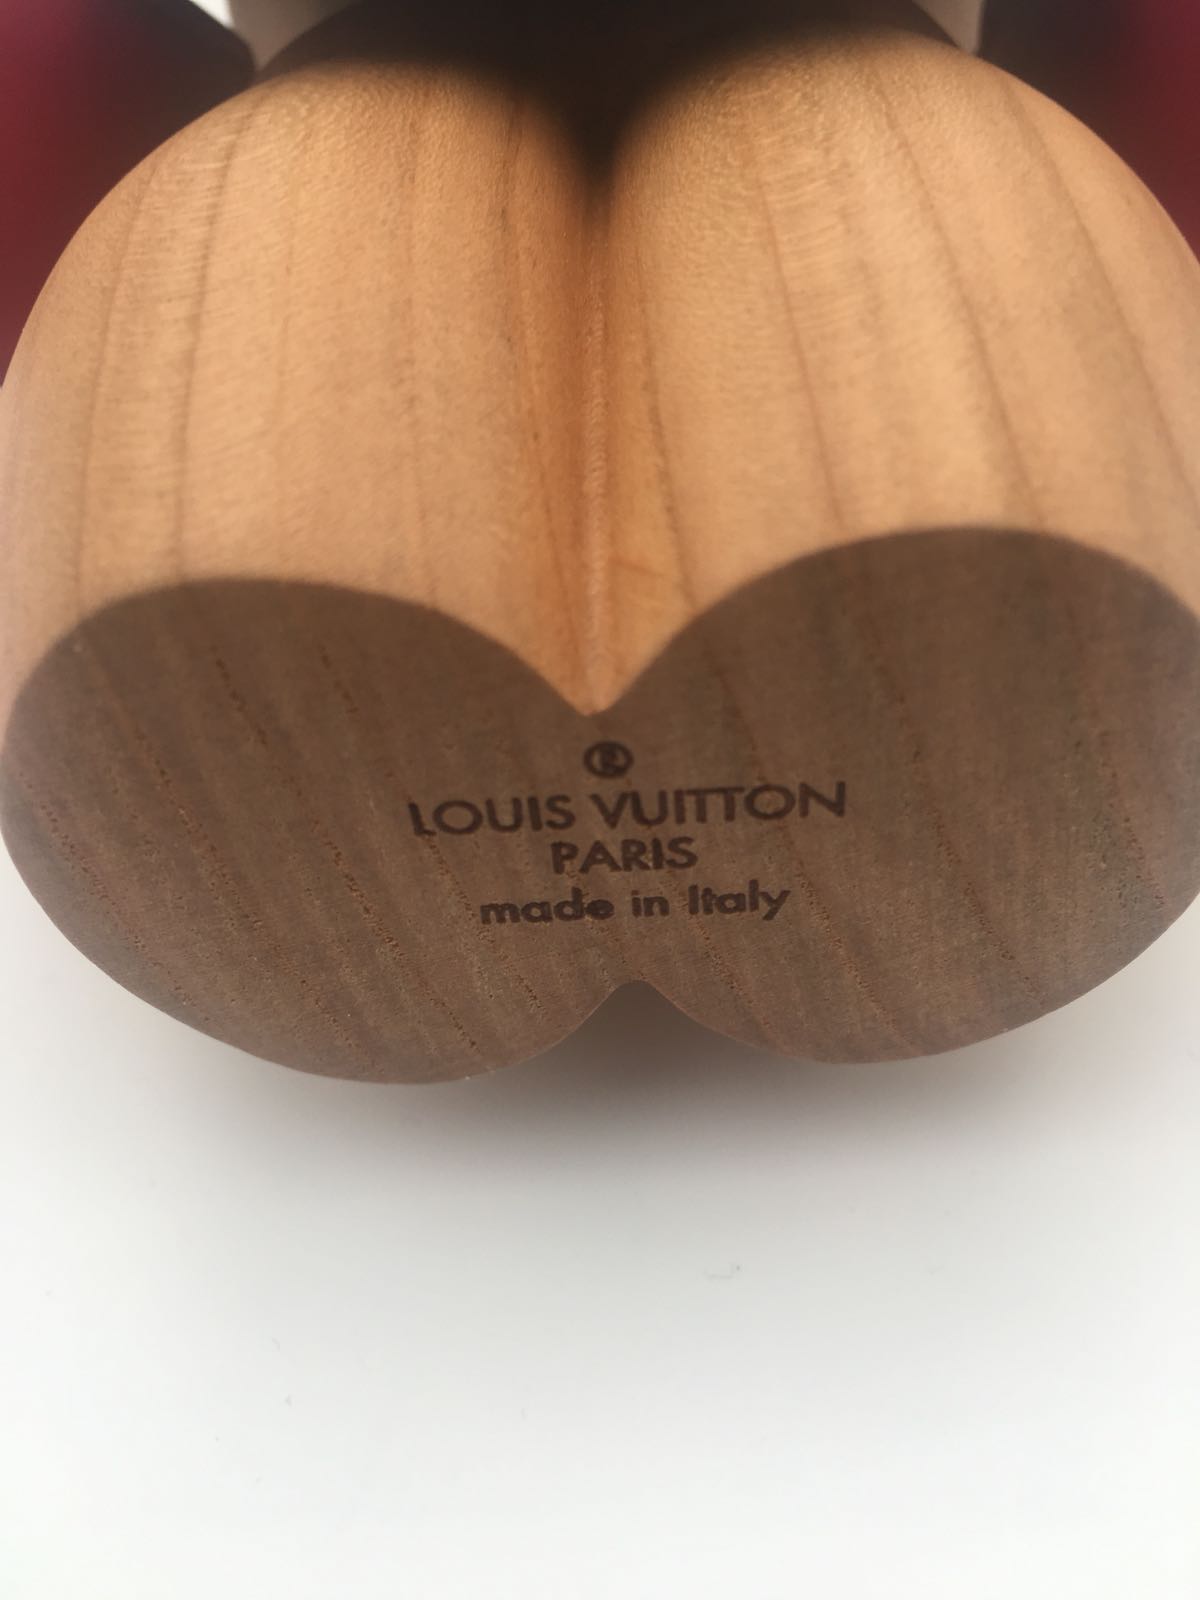 Vivienne Figurine Review - Valentines Day Louis Vuitton Vivienne 